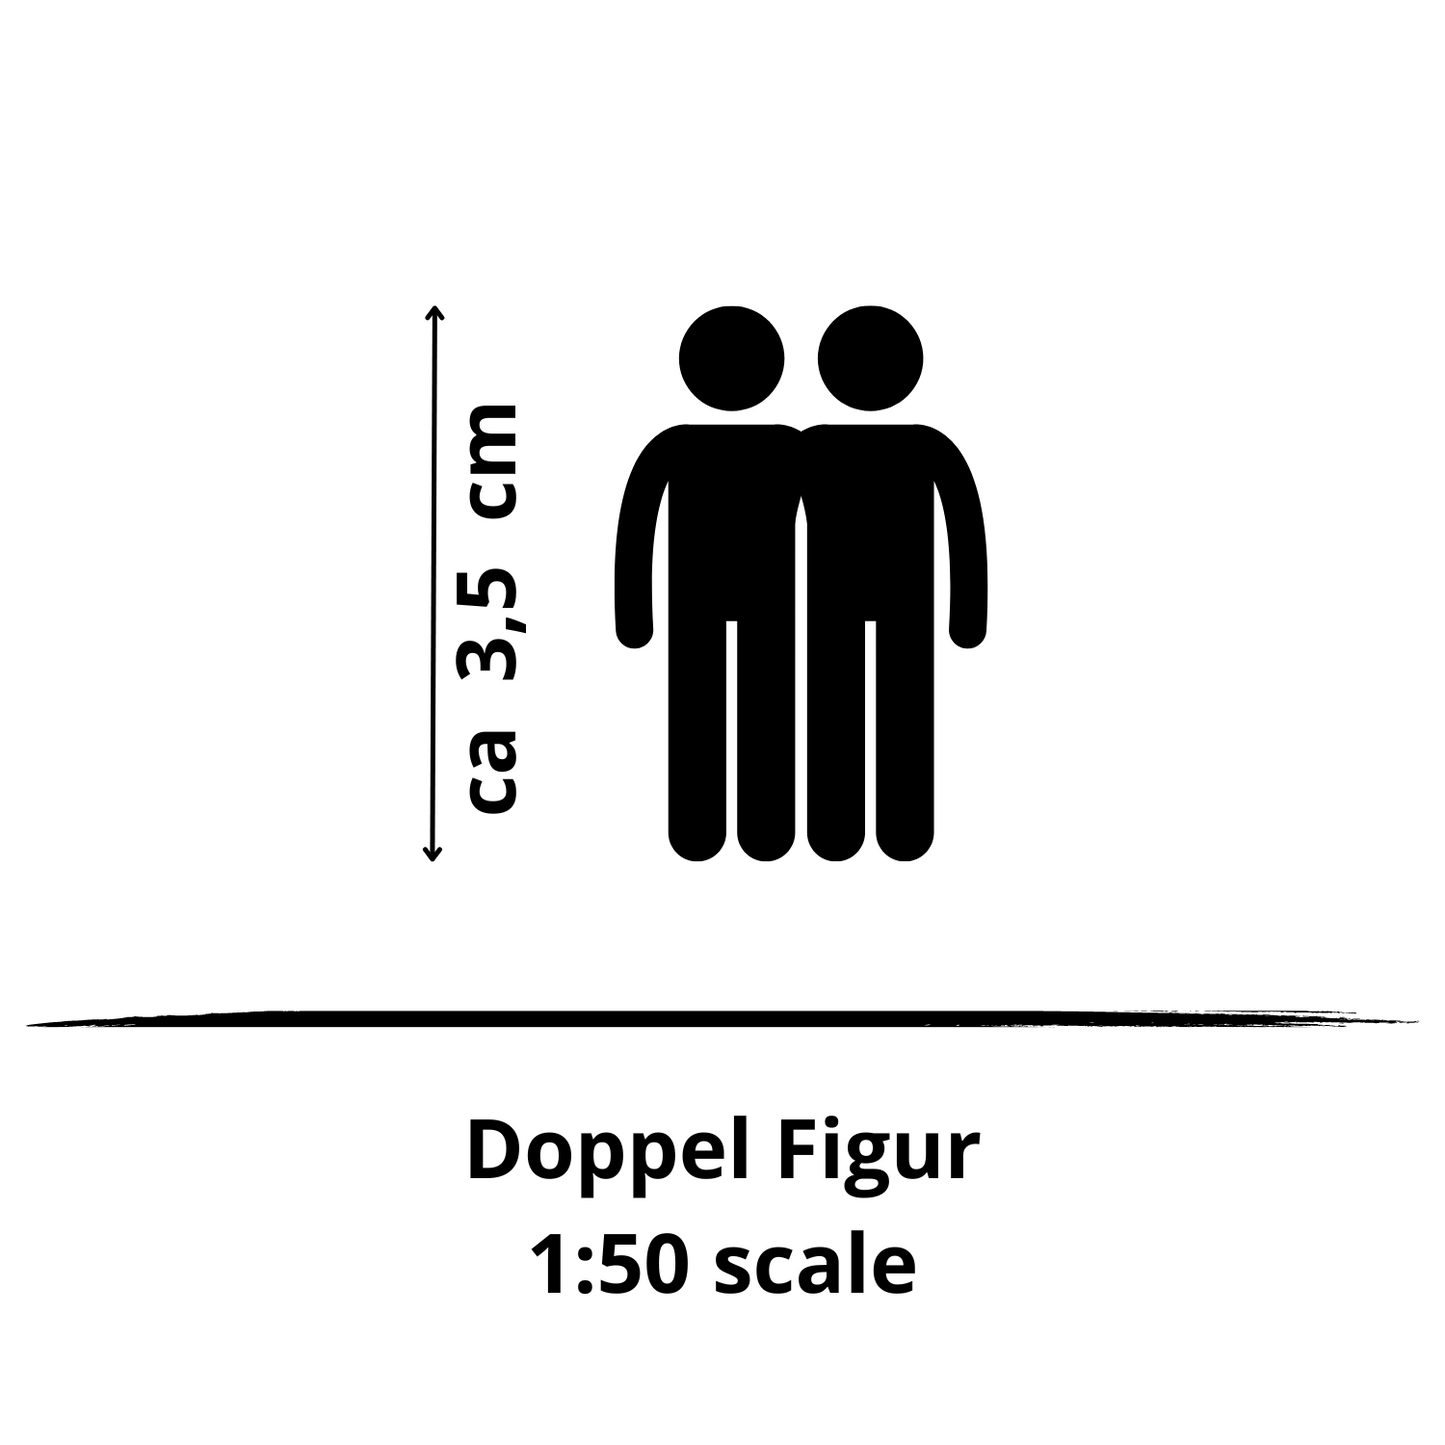 1:50 double figure